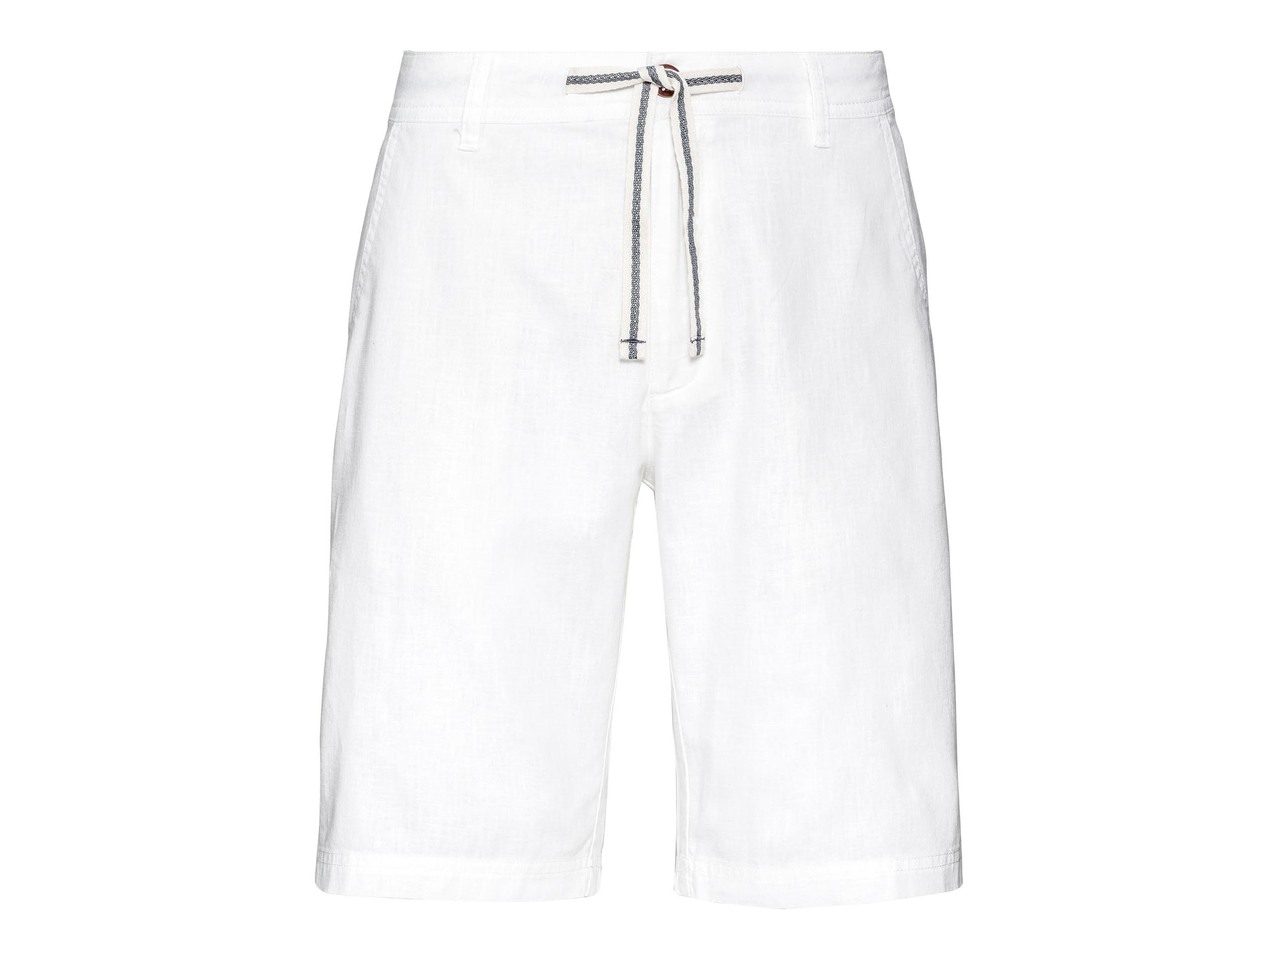 Men's Linen-Blend Bermuda Shorts